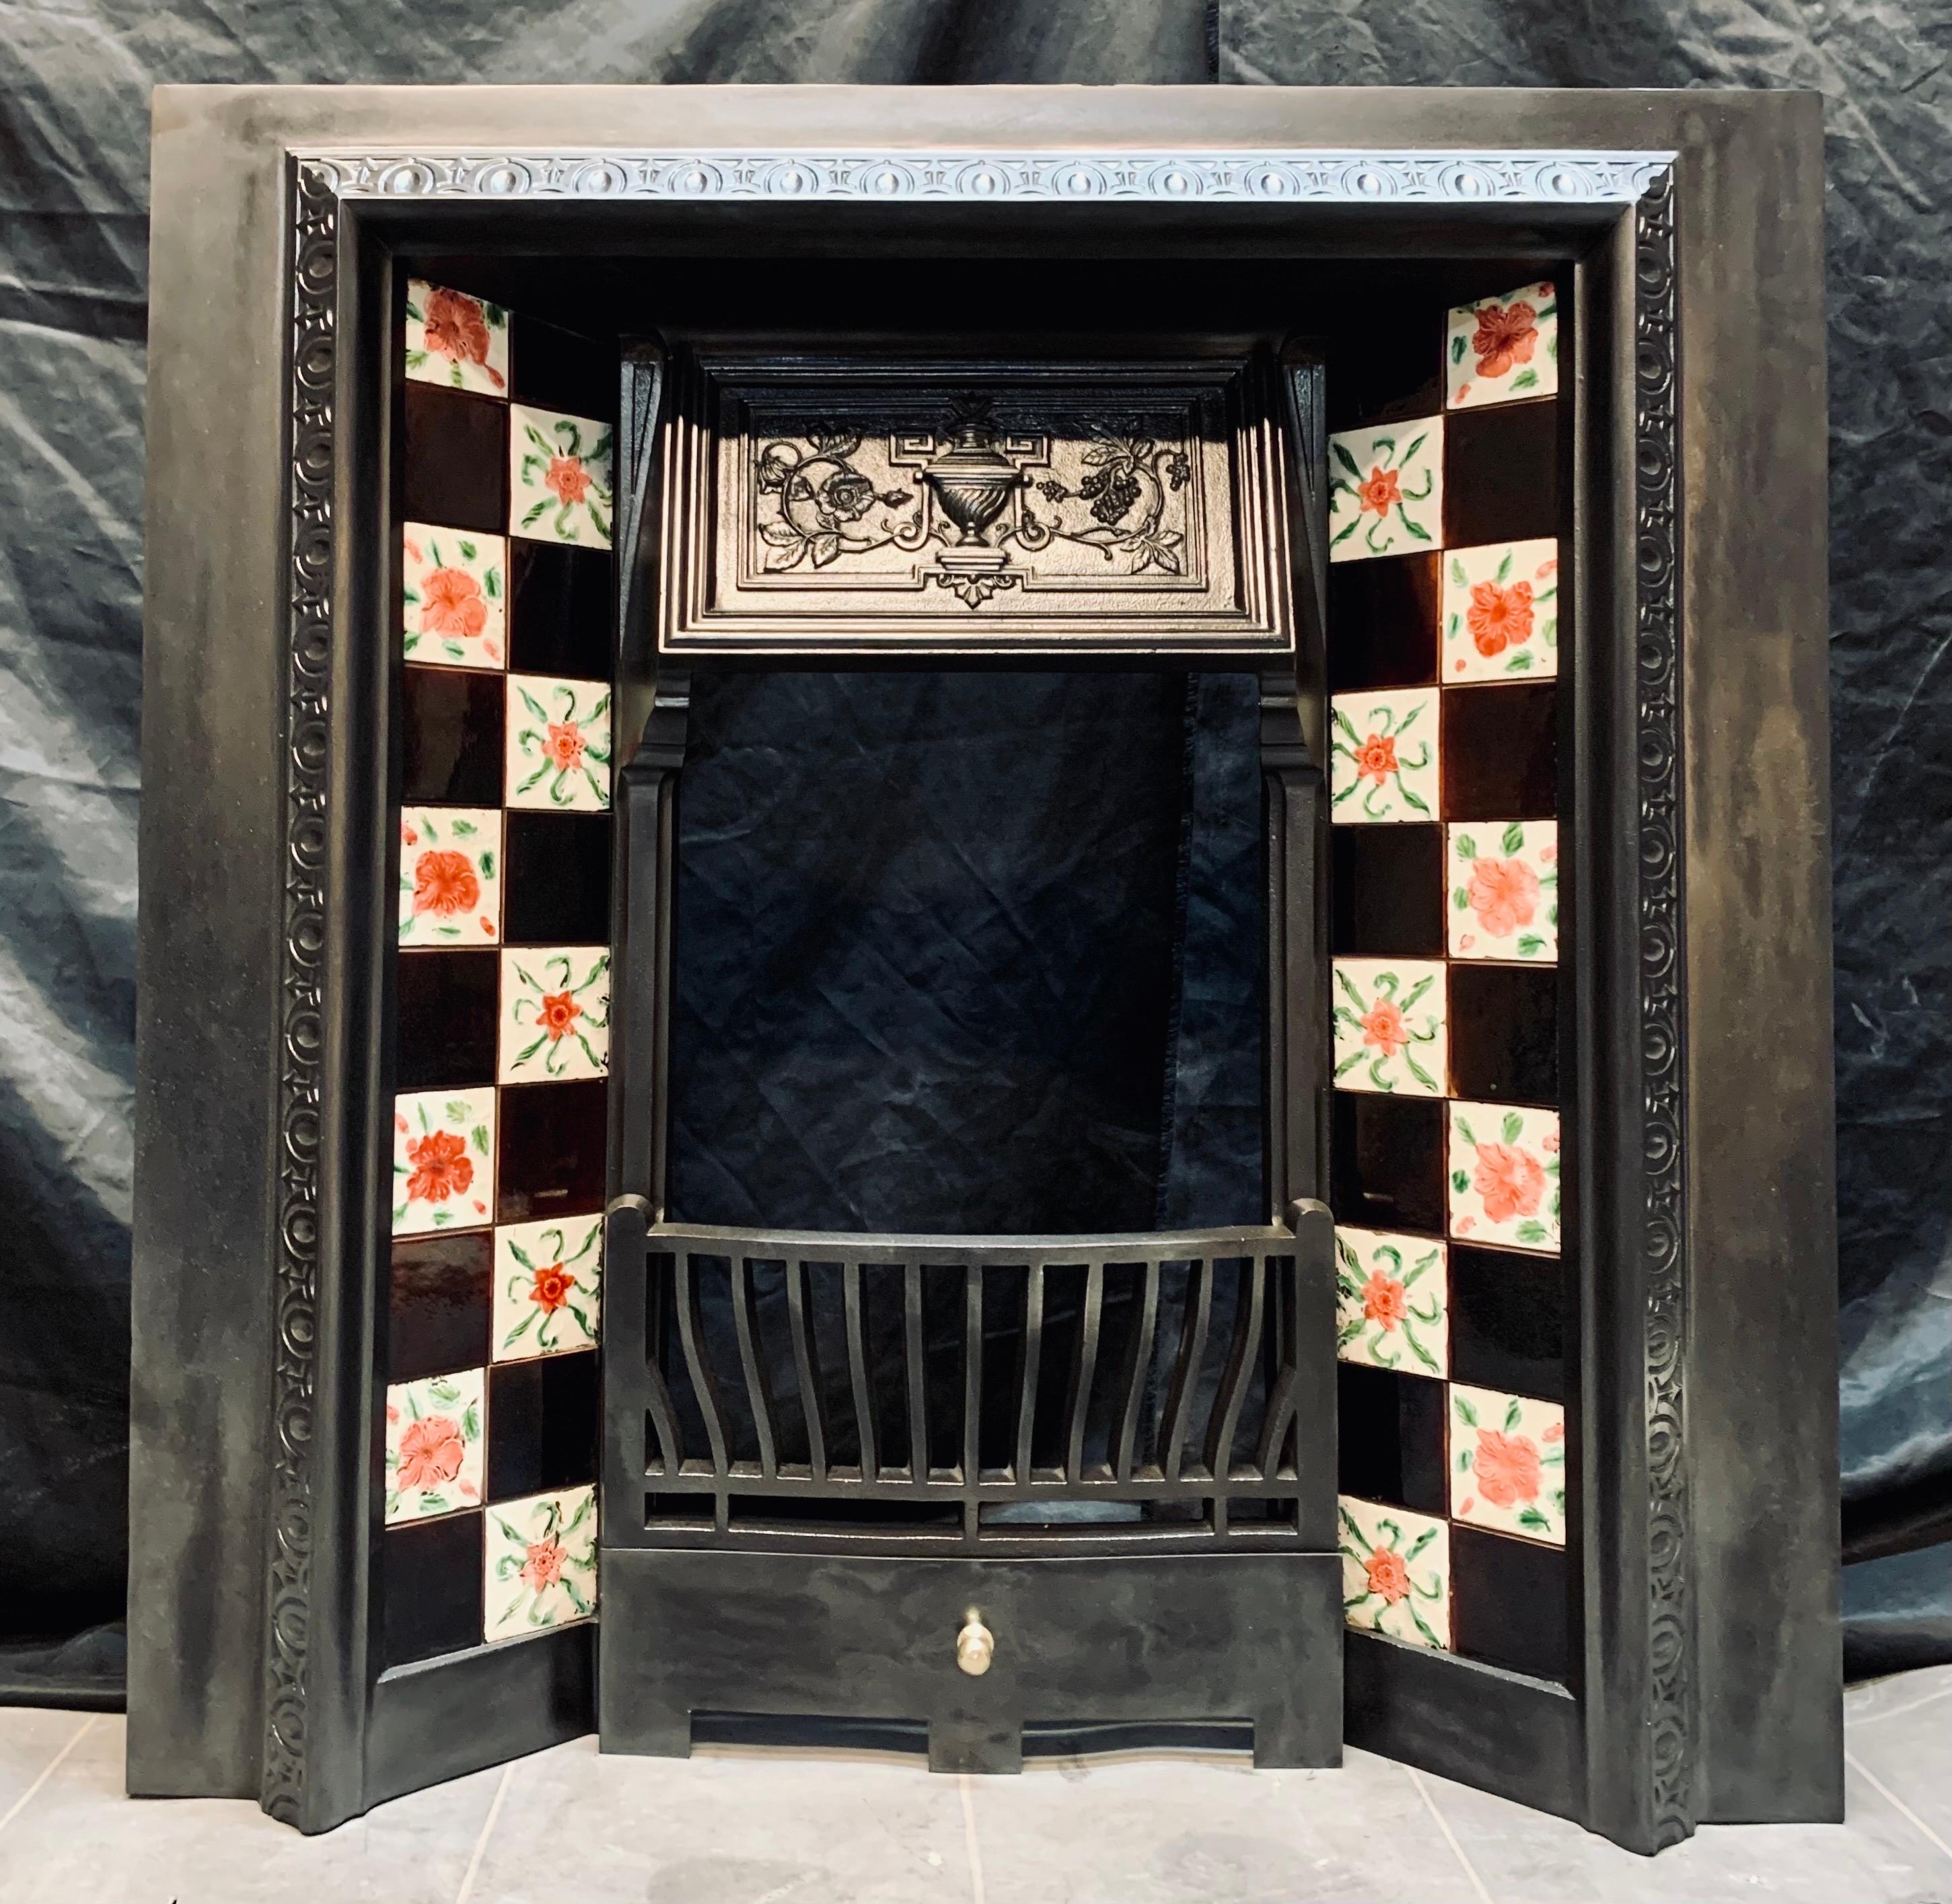 Ein schottischer viktorianischer Kamineinsatz aus Gusseisen aus dem 19. Jahrhundert mit handbemalten Original-Kacheln. Ein äußerer Rahmen aus Gusseisen mit einer erhabenen dekorativen Umrandung, ein zentraler Baldachin mit Hochrelief-Details,